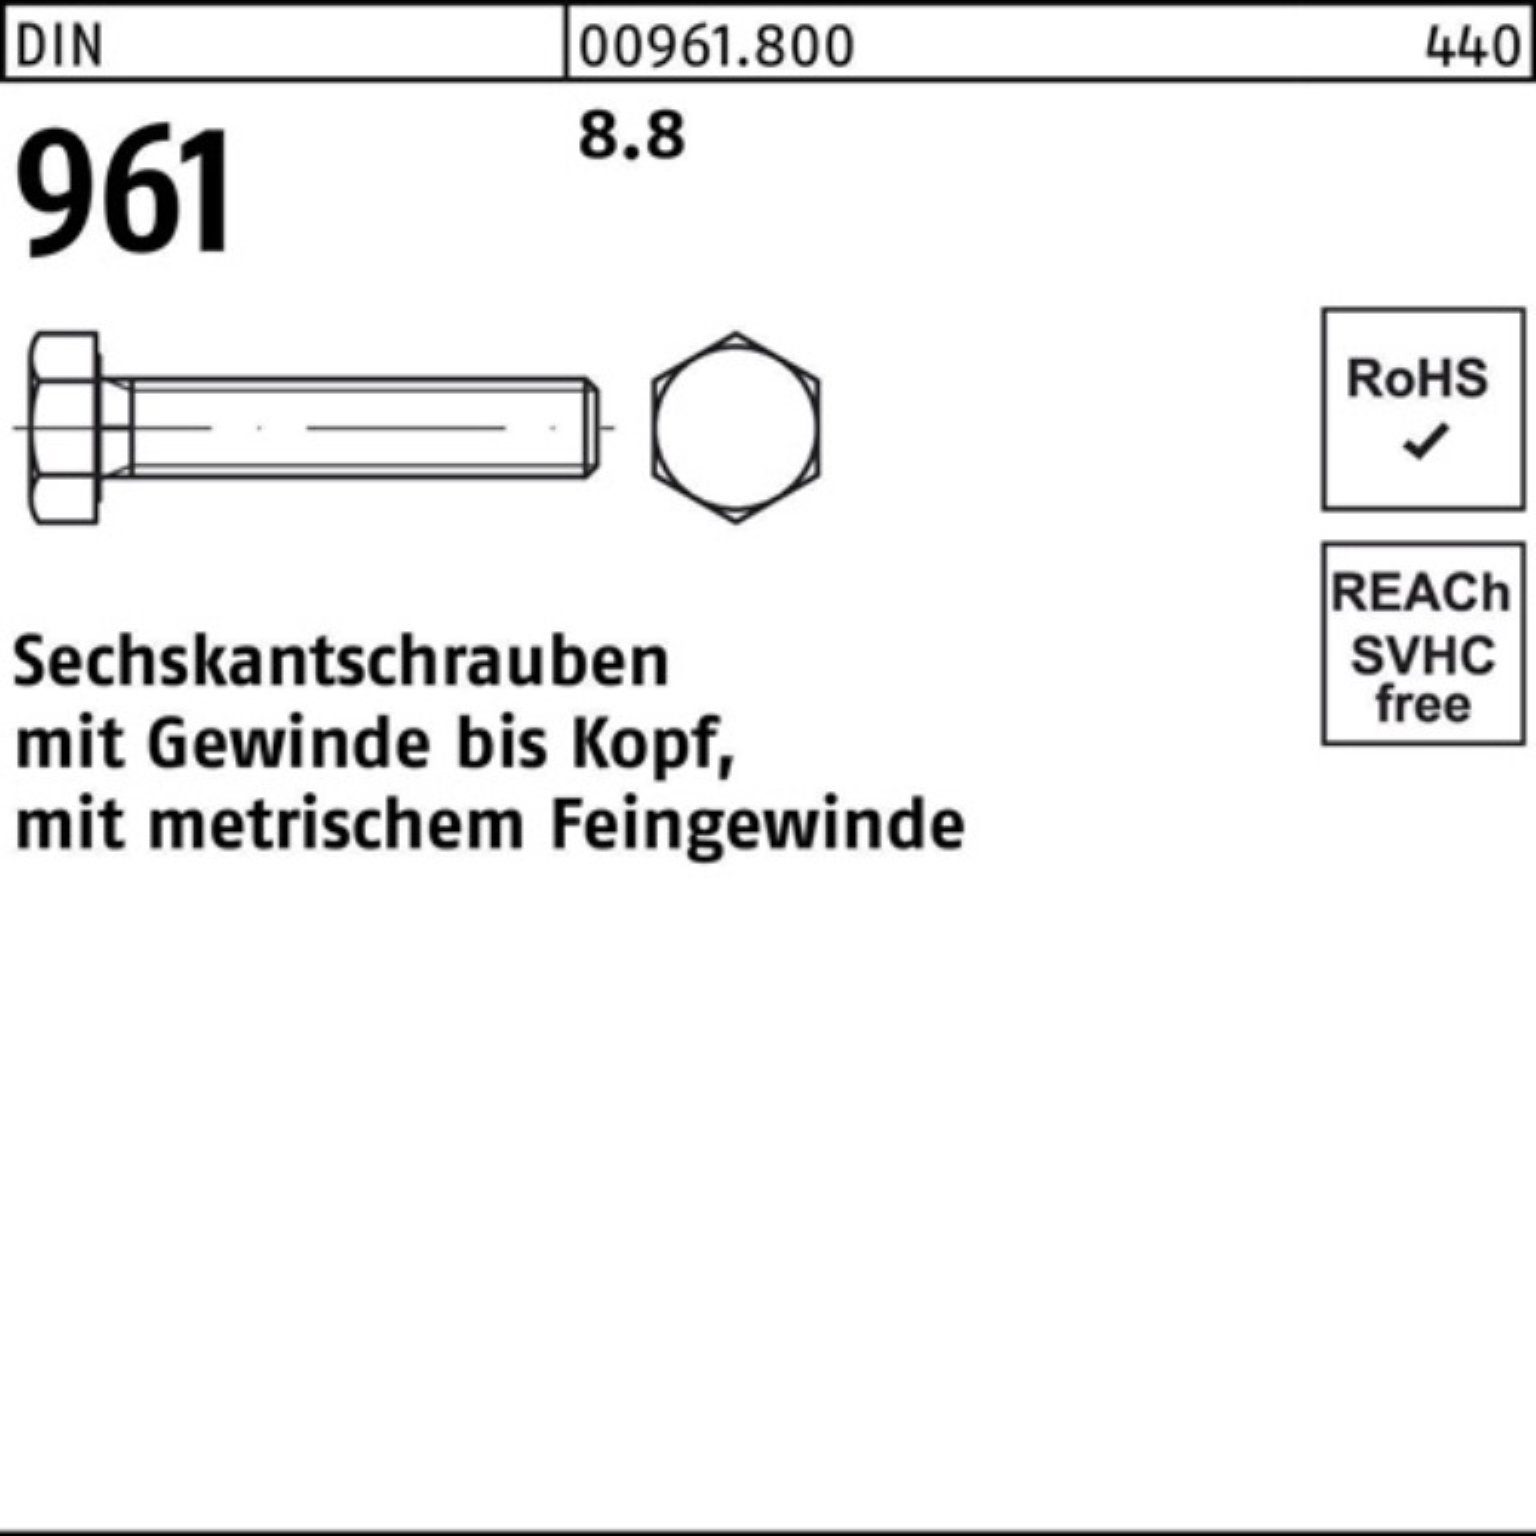 Sechskantschraube VG 1 Reyher 100er Stück DIN 8.8 Sechskantschraube 961 90 Pack 961 M30x2x DIN